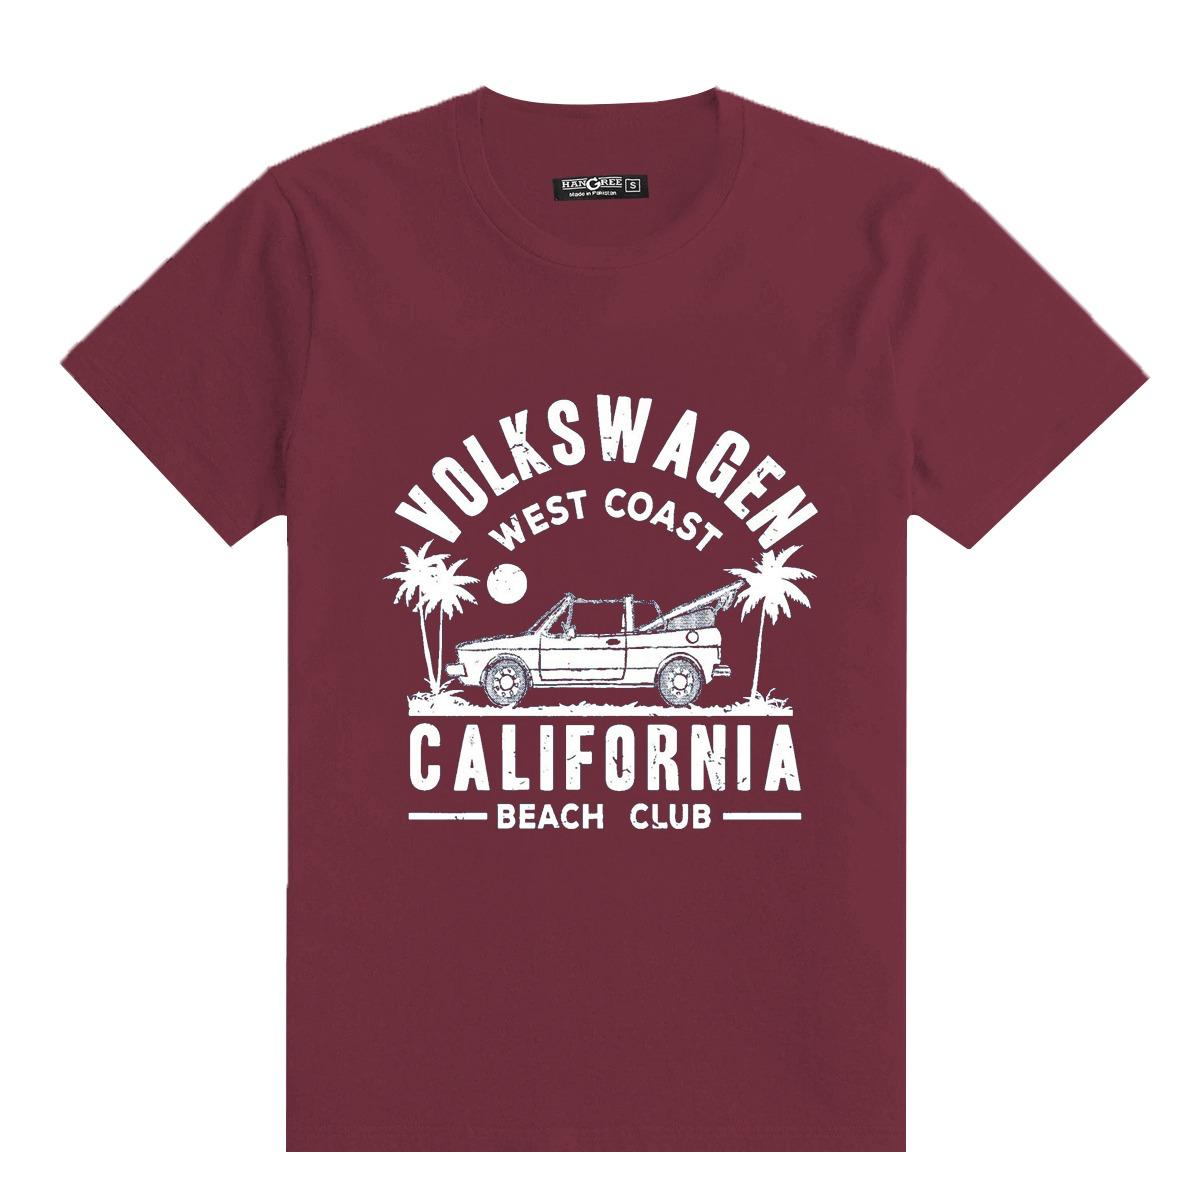 HG "VOLKSWAGEN" Printed Tee Shirt - Maroon